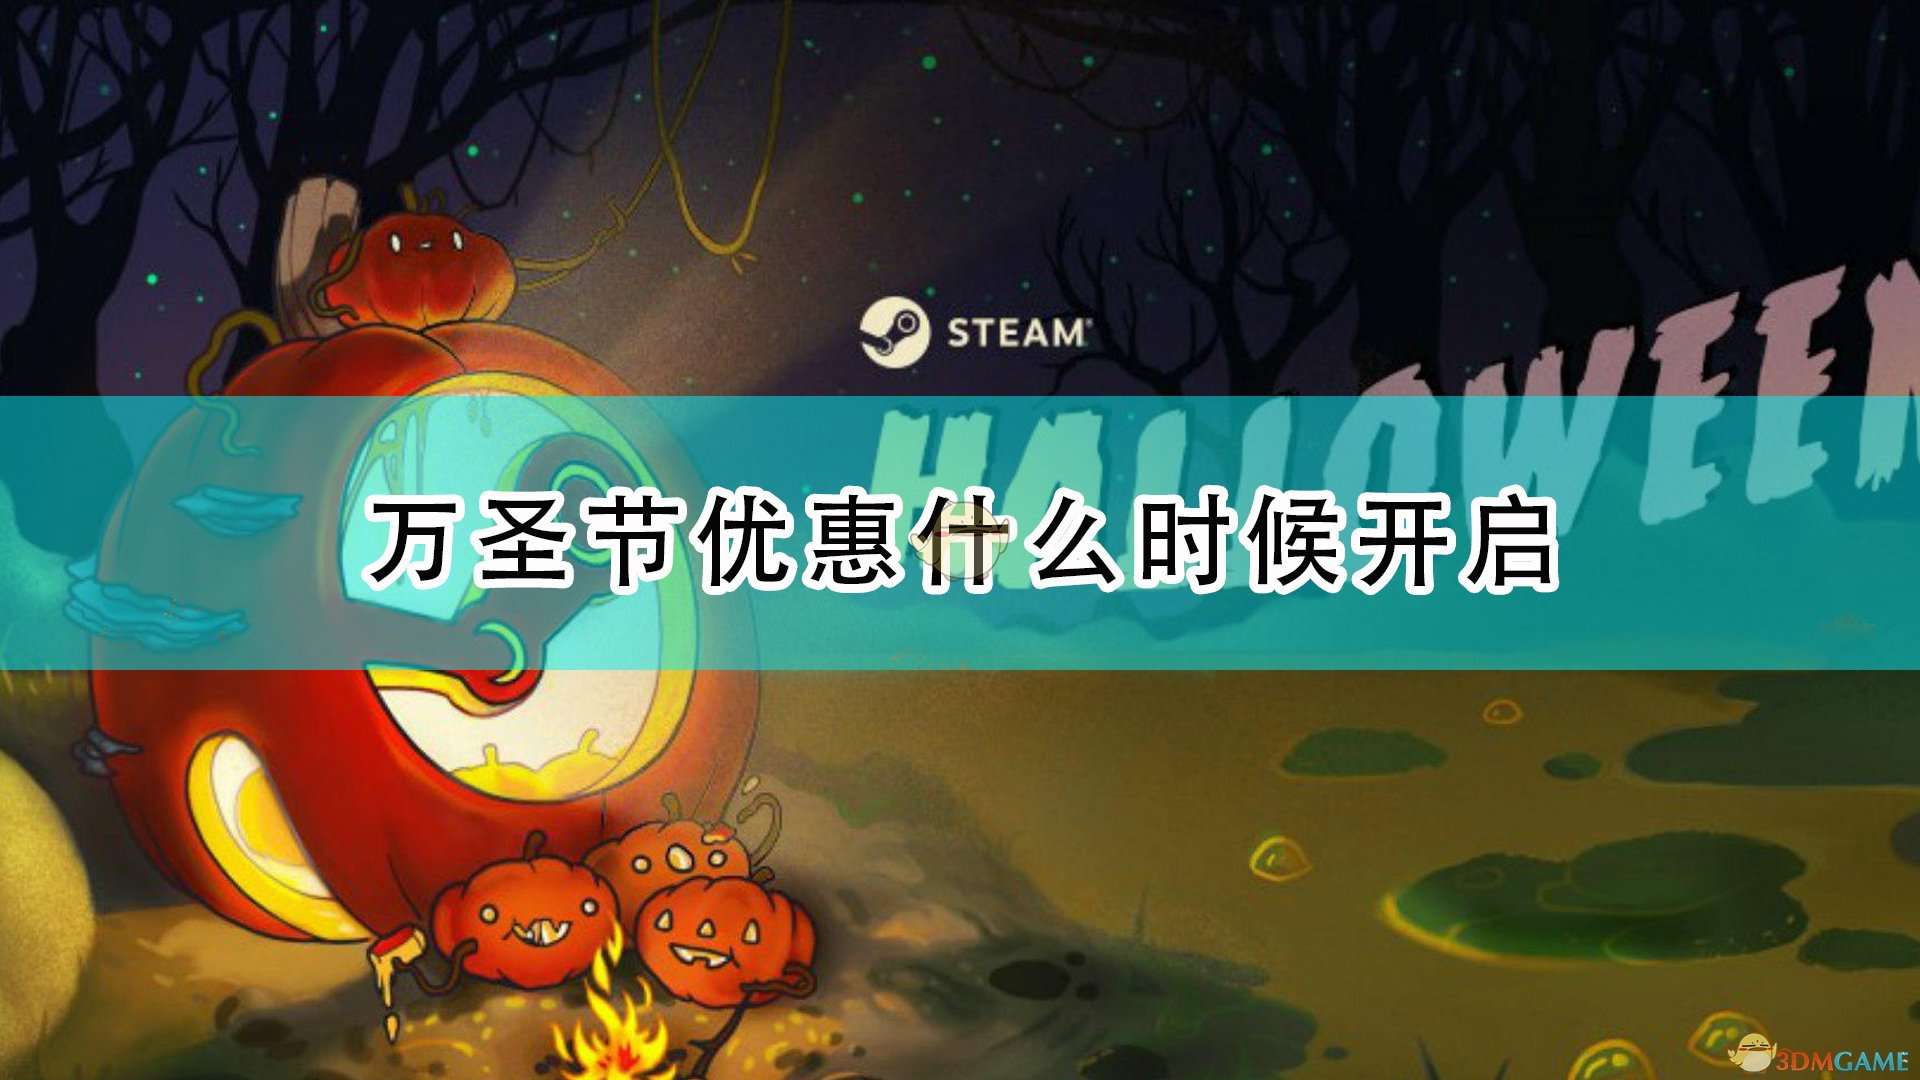 Steam2021万圣节特卖时间介绍